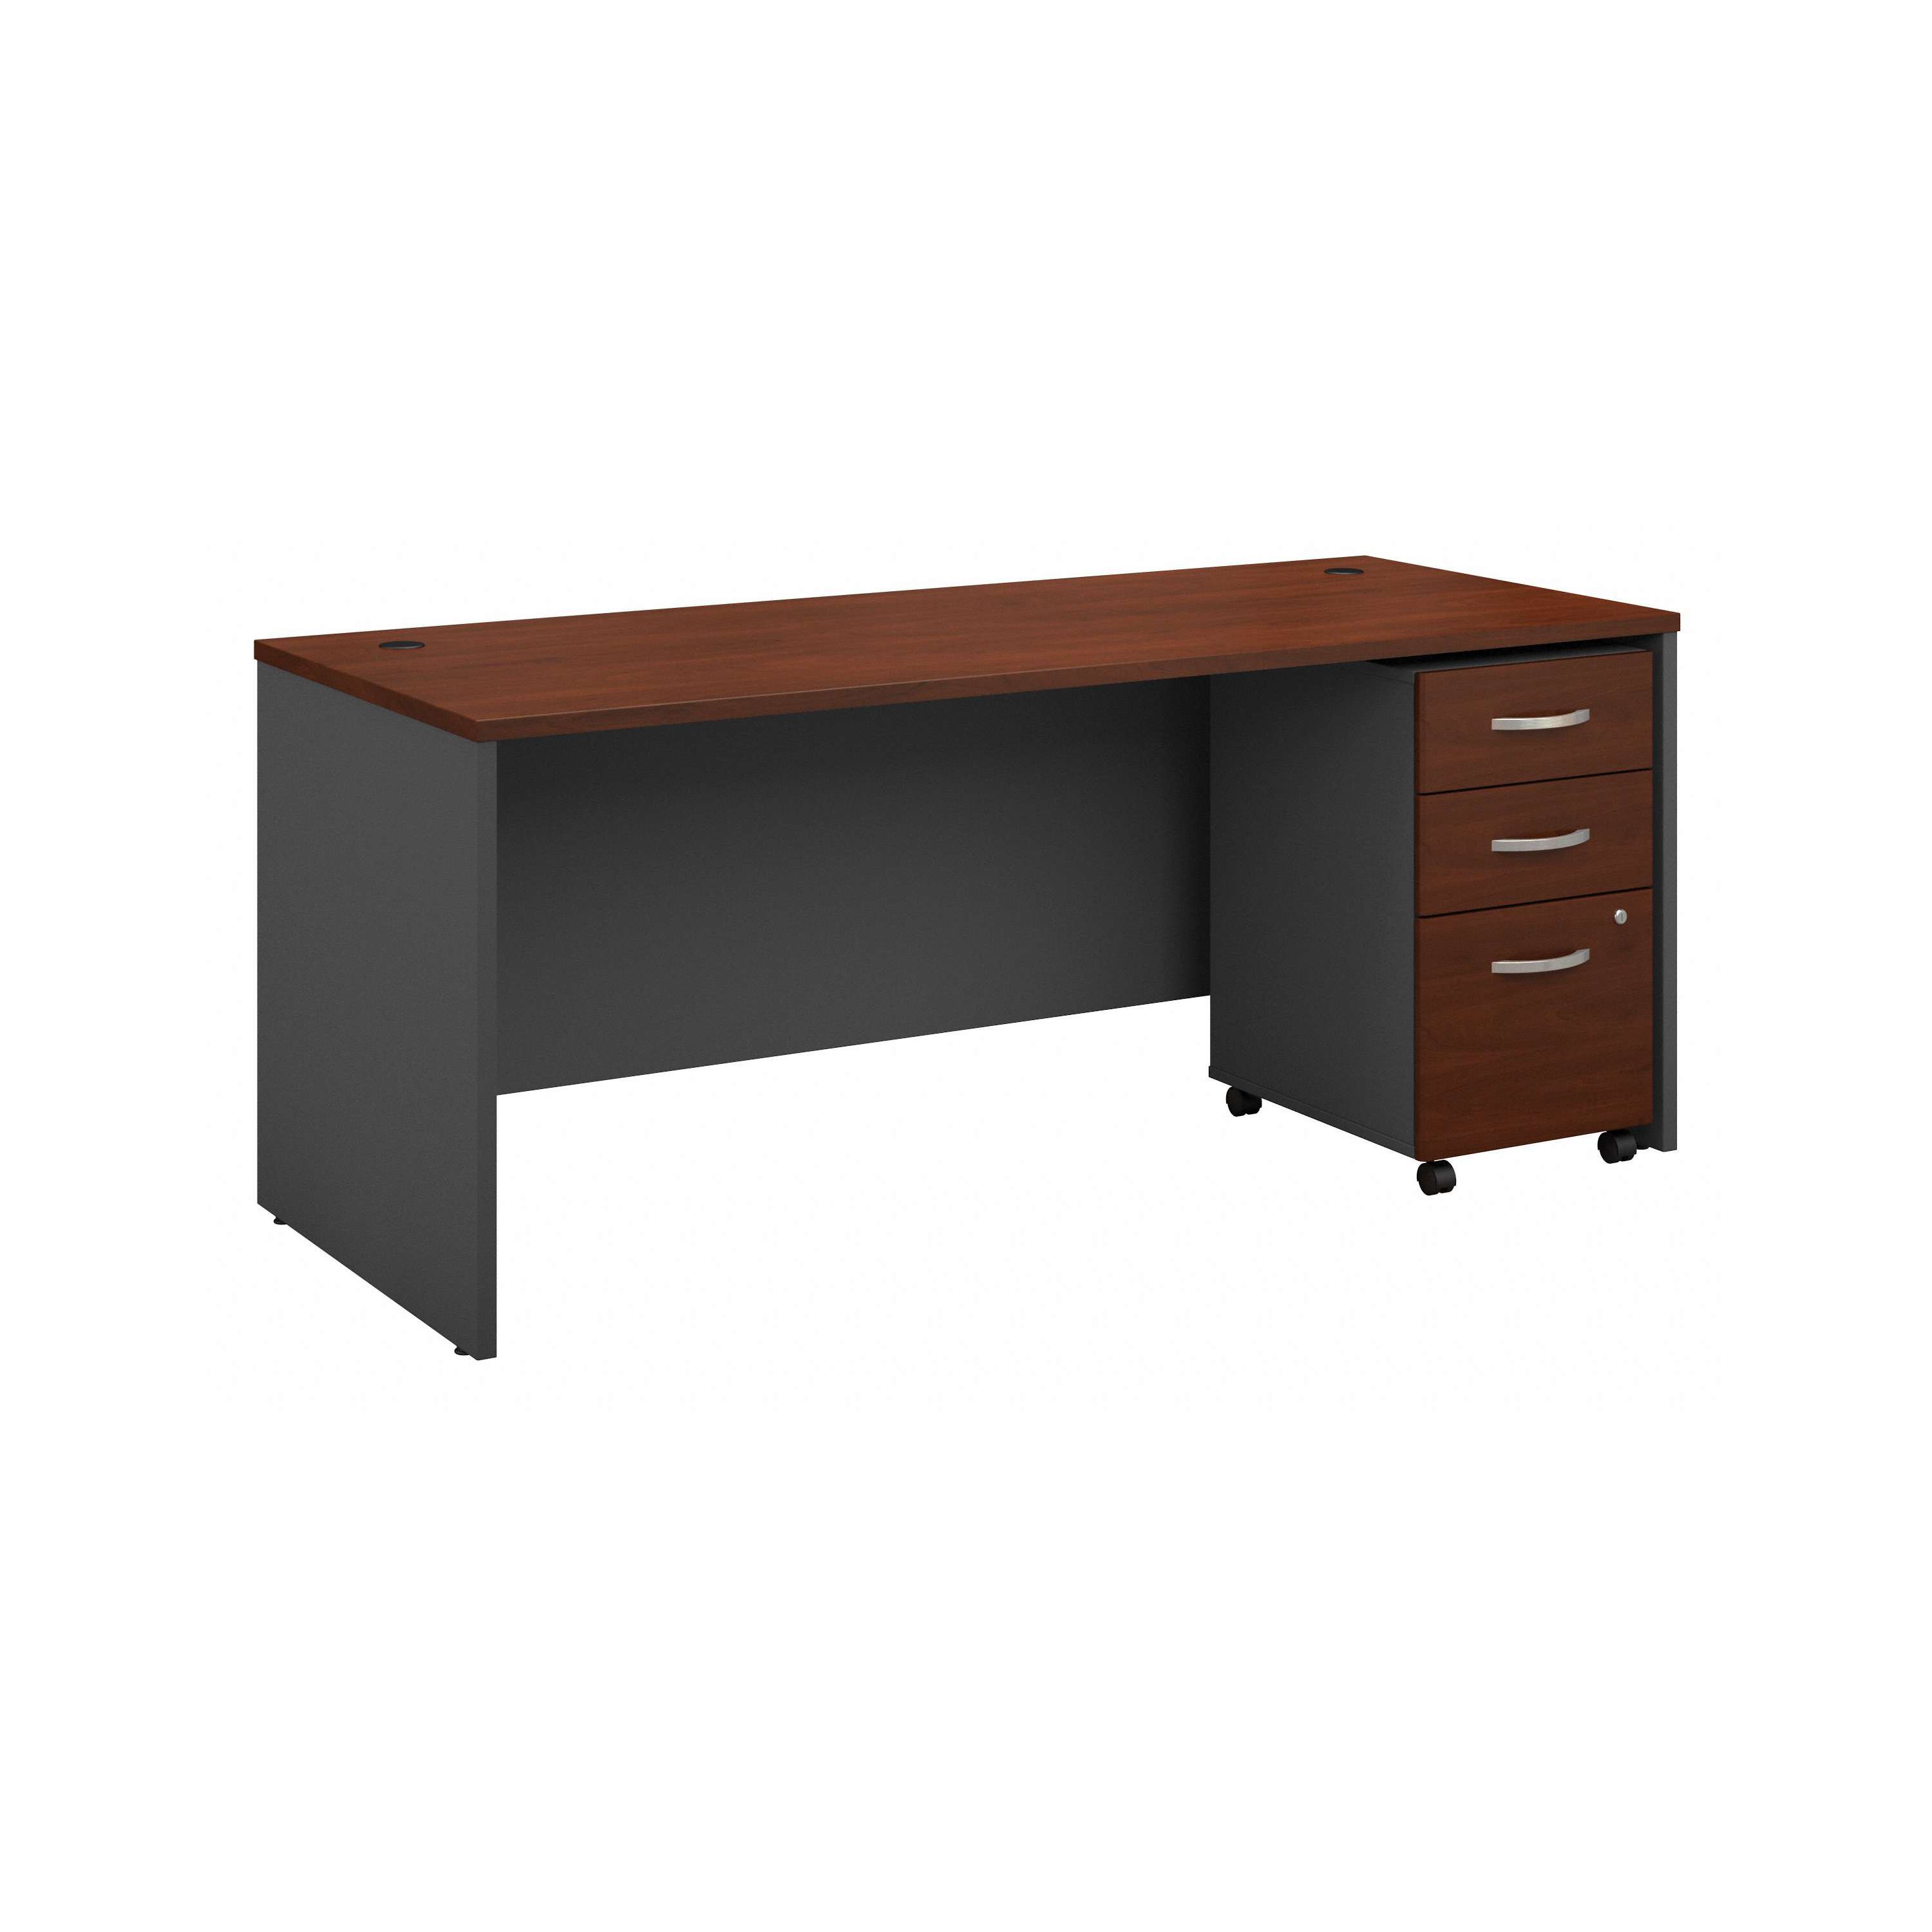 Shop Bush Business Furniture Series C 72W x 30D Office Desk with Mobile File Cabinet 02 SRC113HCSU #color_hansen cherry/graphite gray